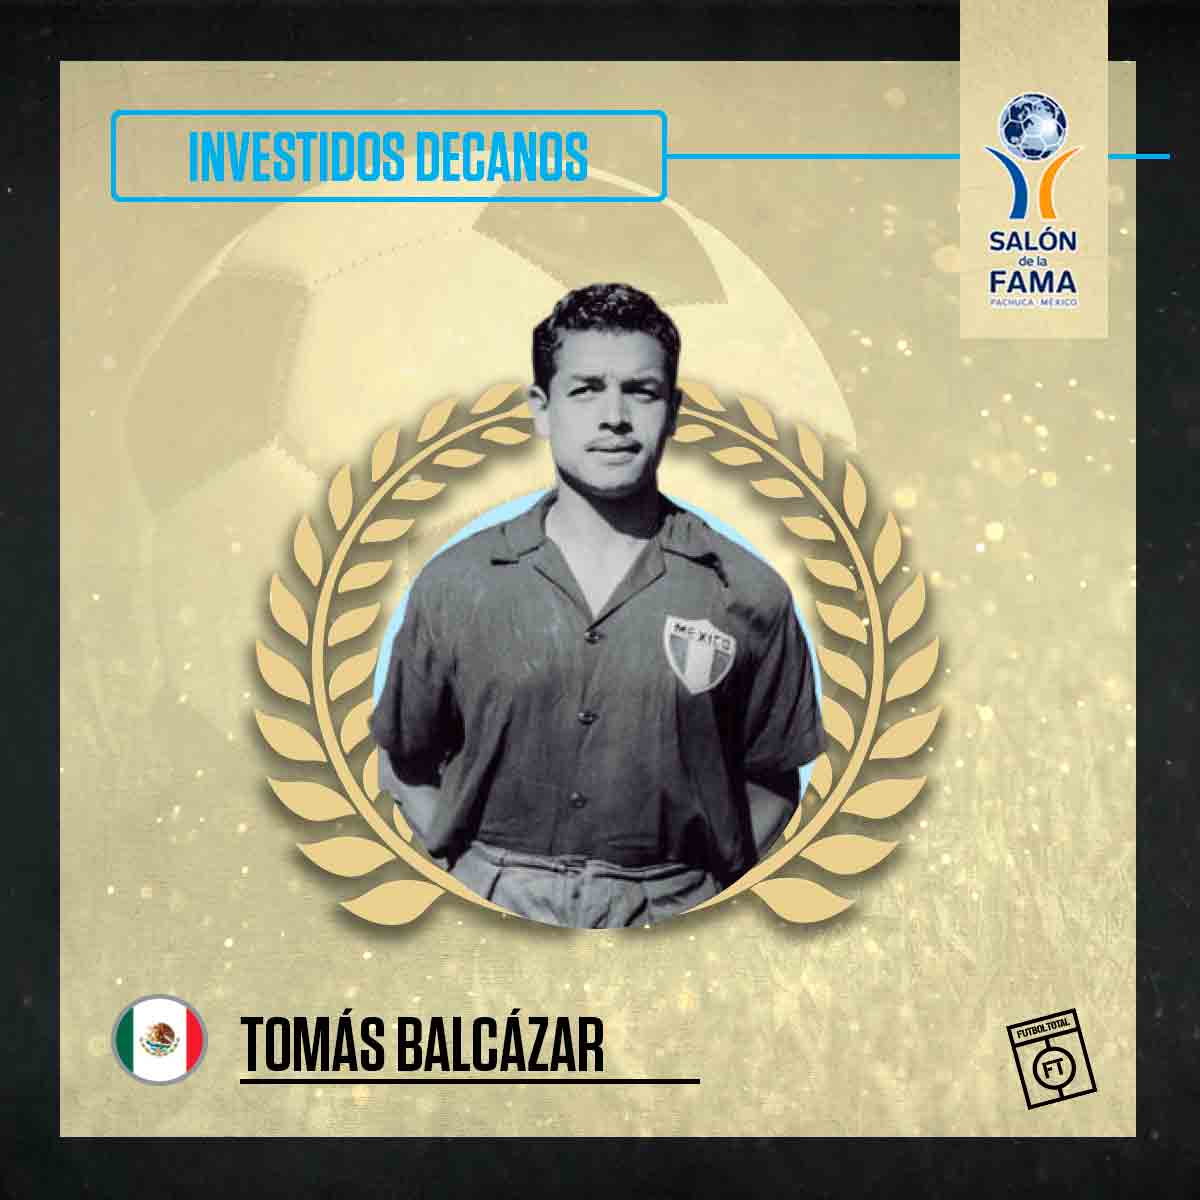 Tomás Balcázar